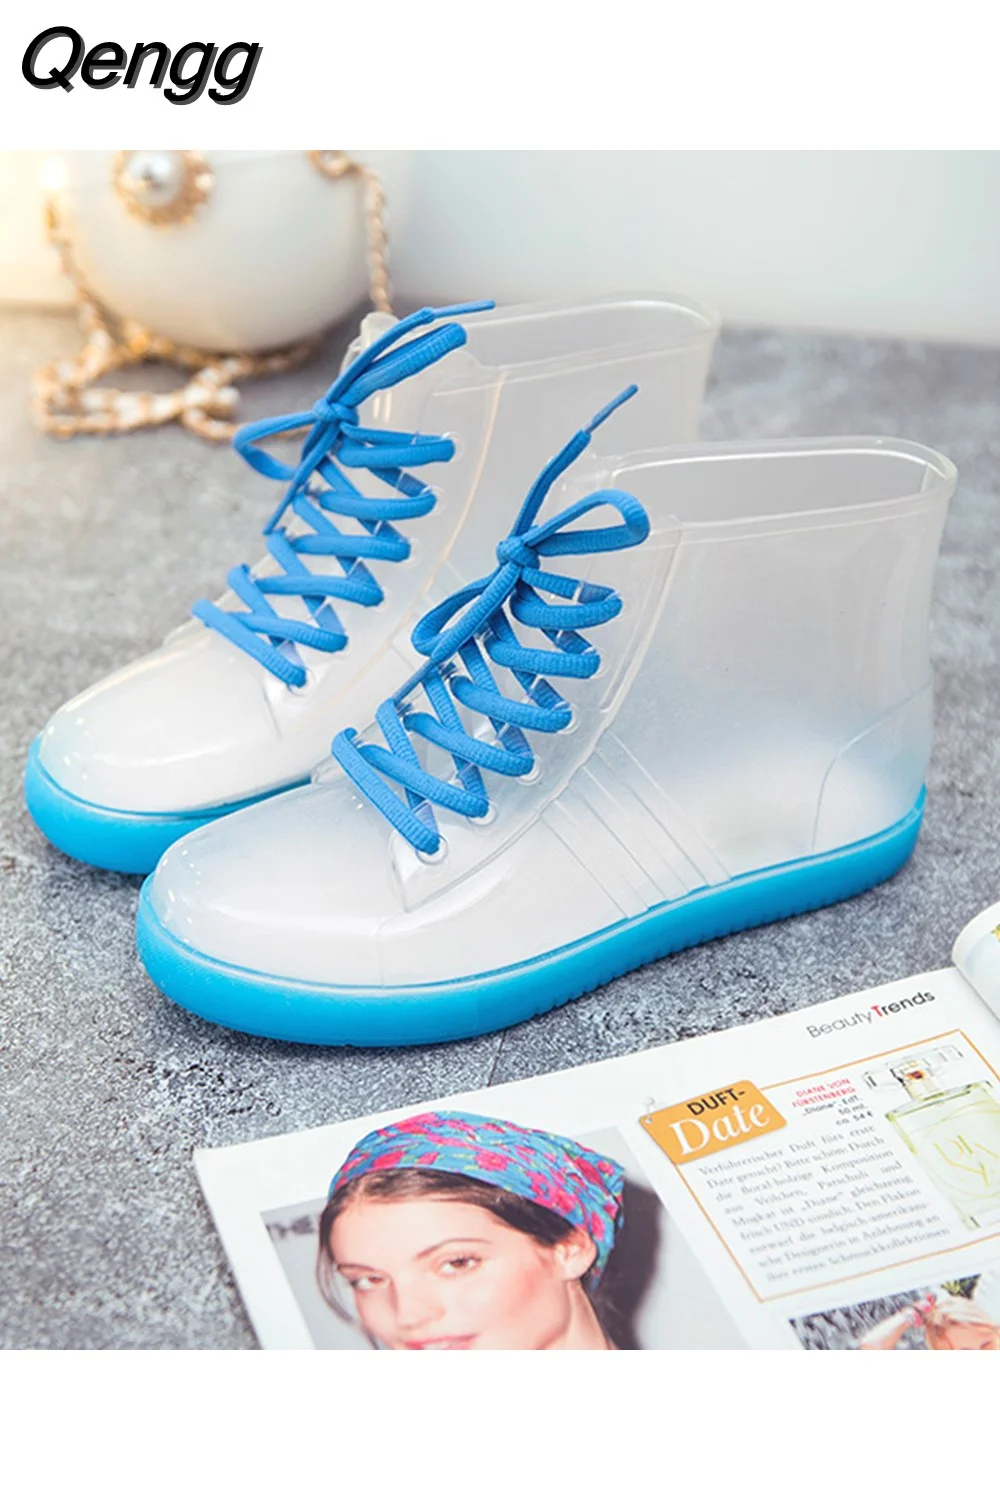 Qengg Transparent Anti-Slip Fashion Waterproof Shoes Rainshoes Rain Boots Shoe Cover Woolen Cotton Rubber Boots Female Short